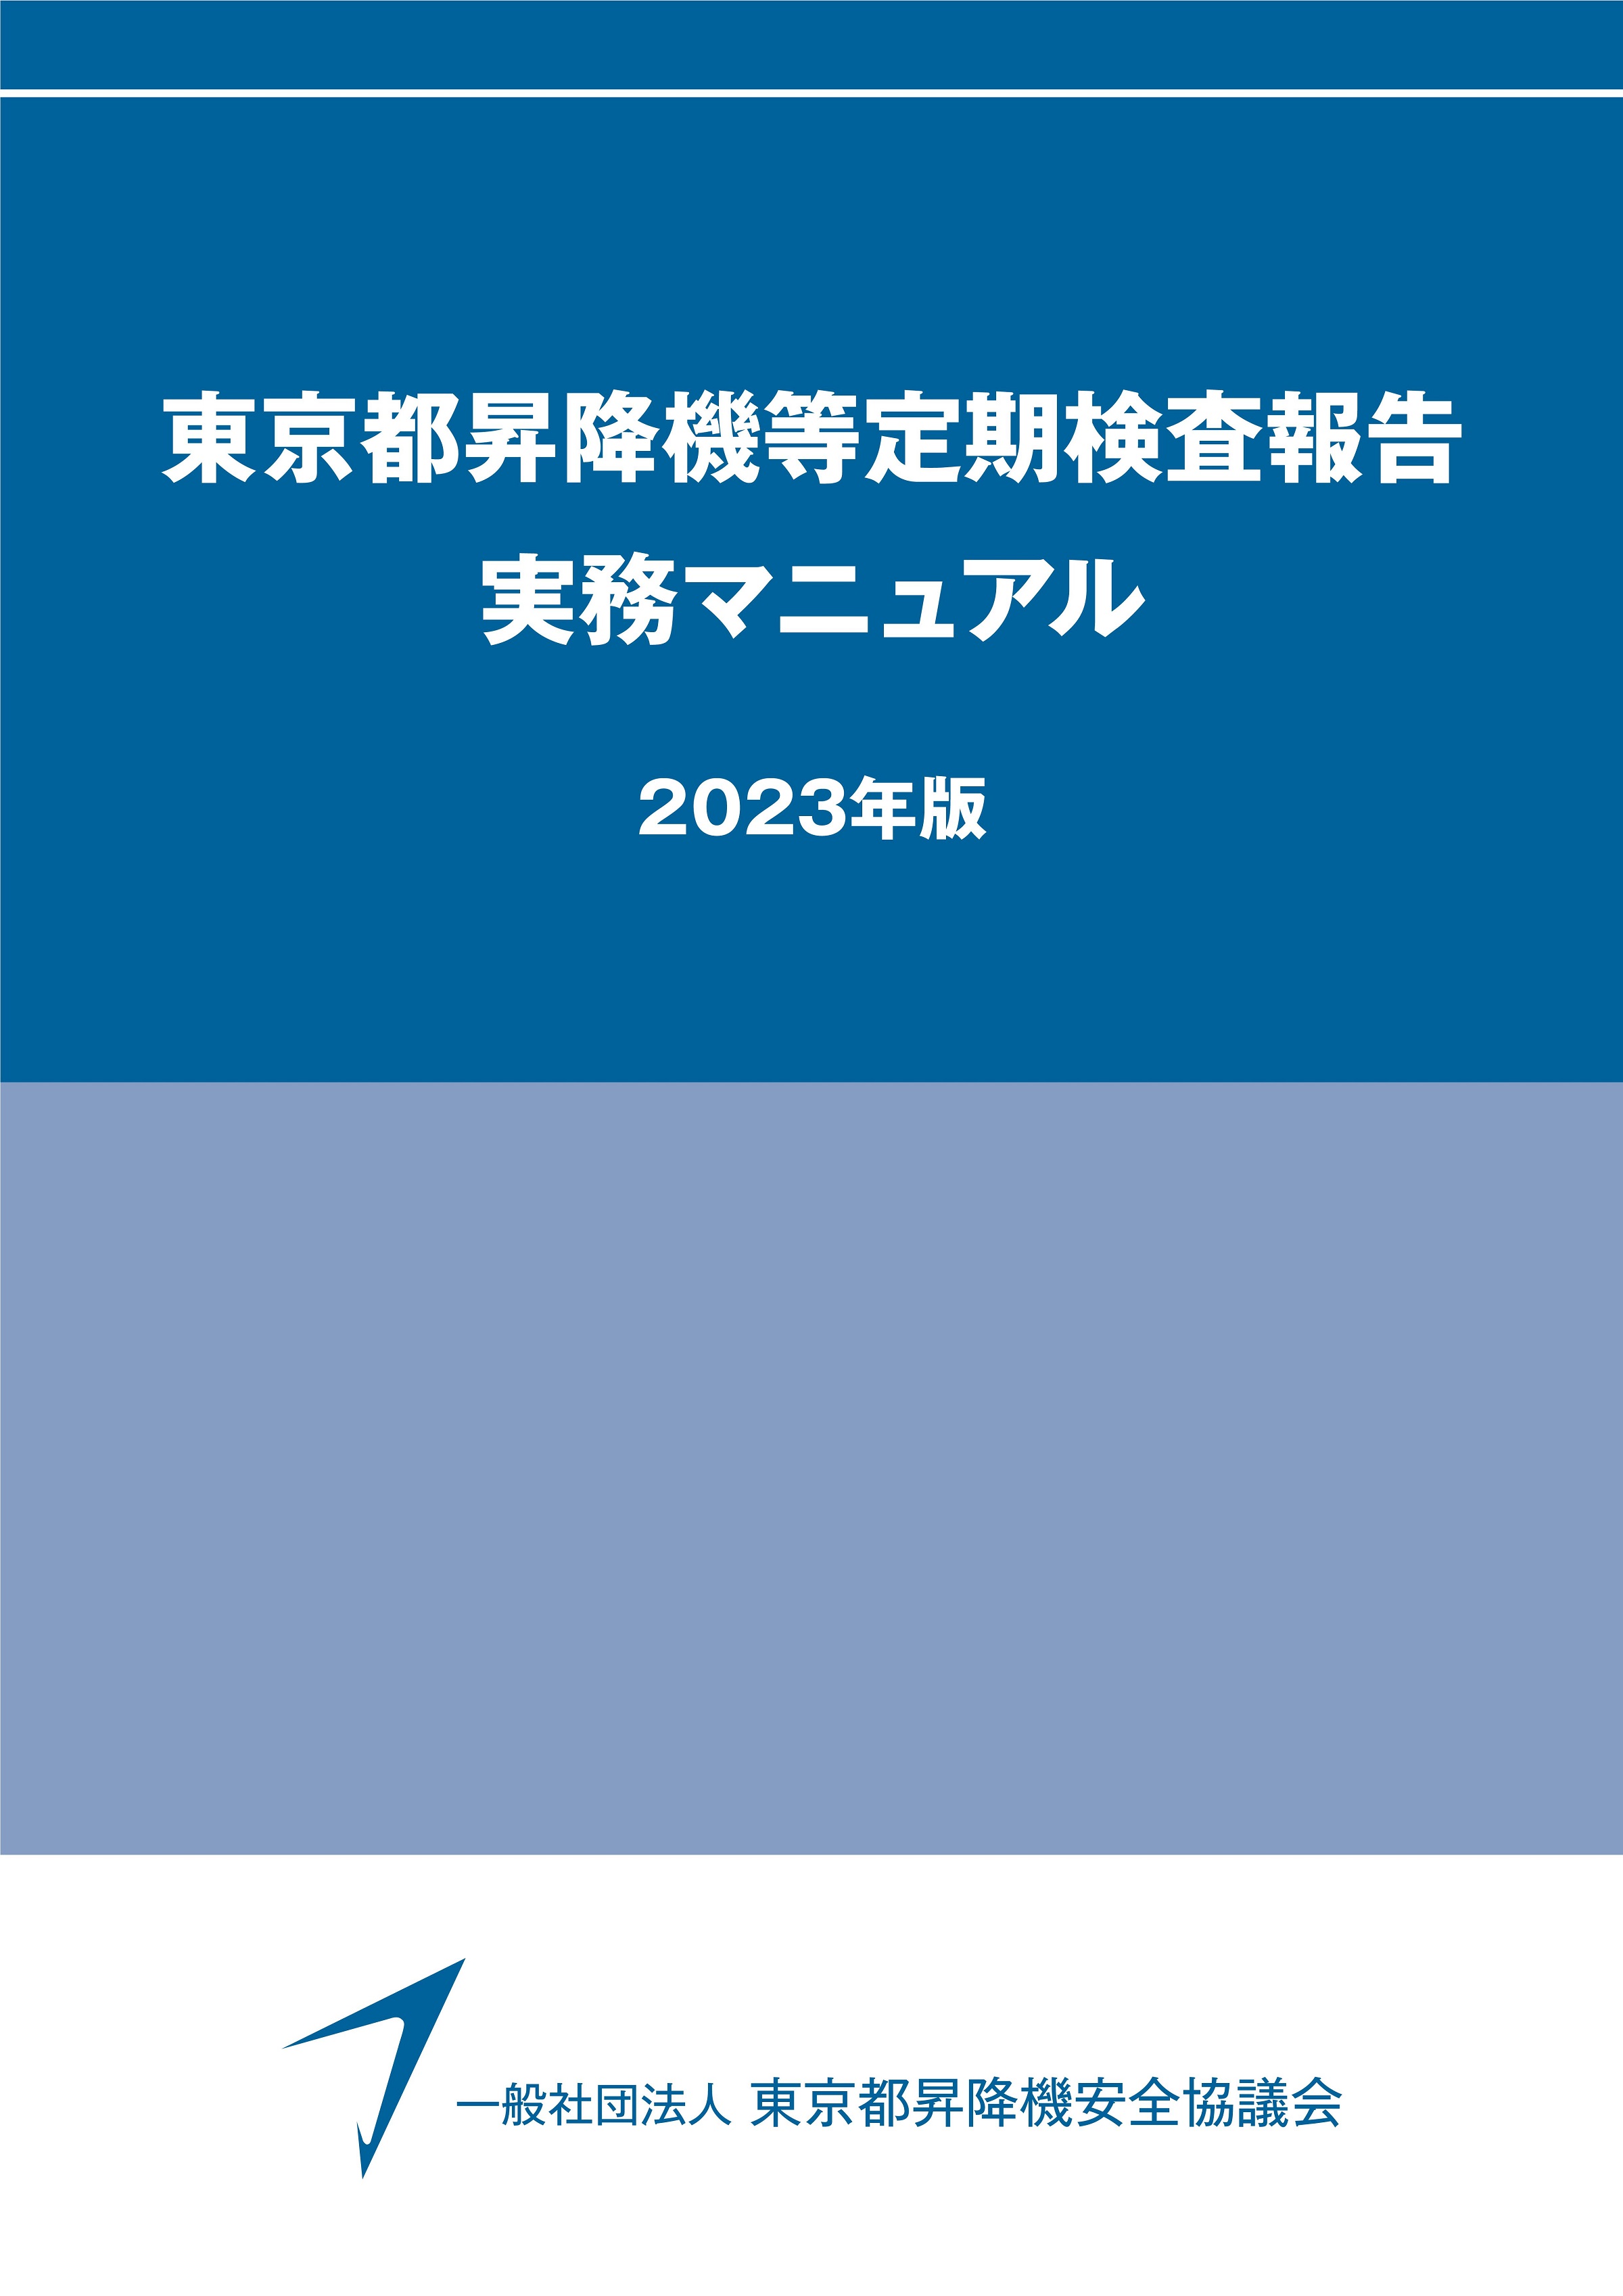 昇降機定期検査報告書 作成要領（2023年版）